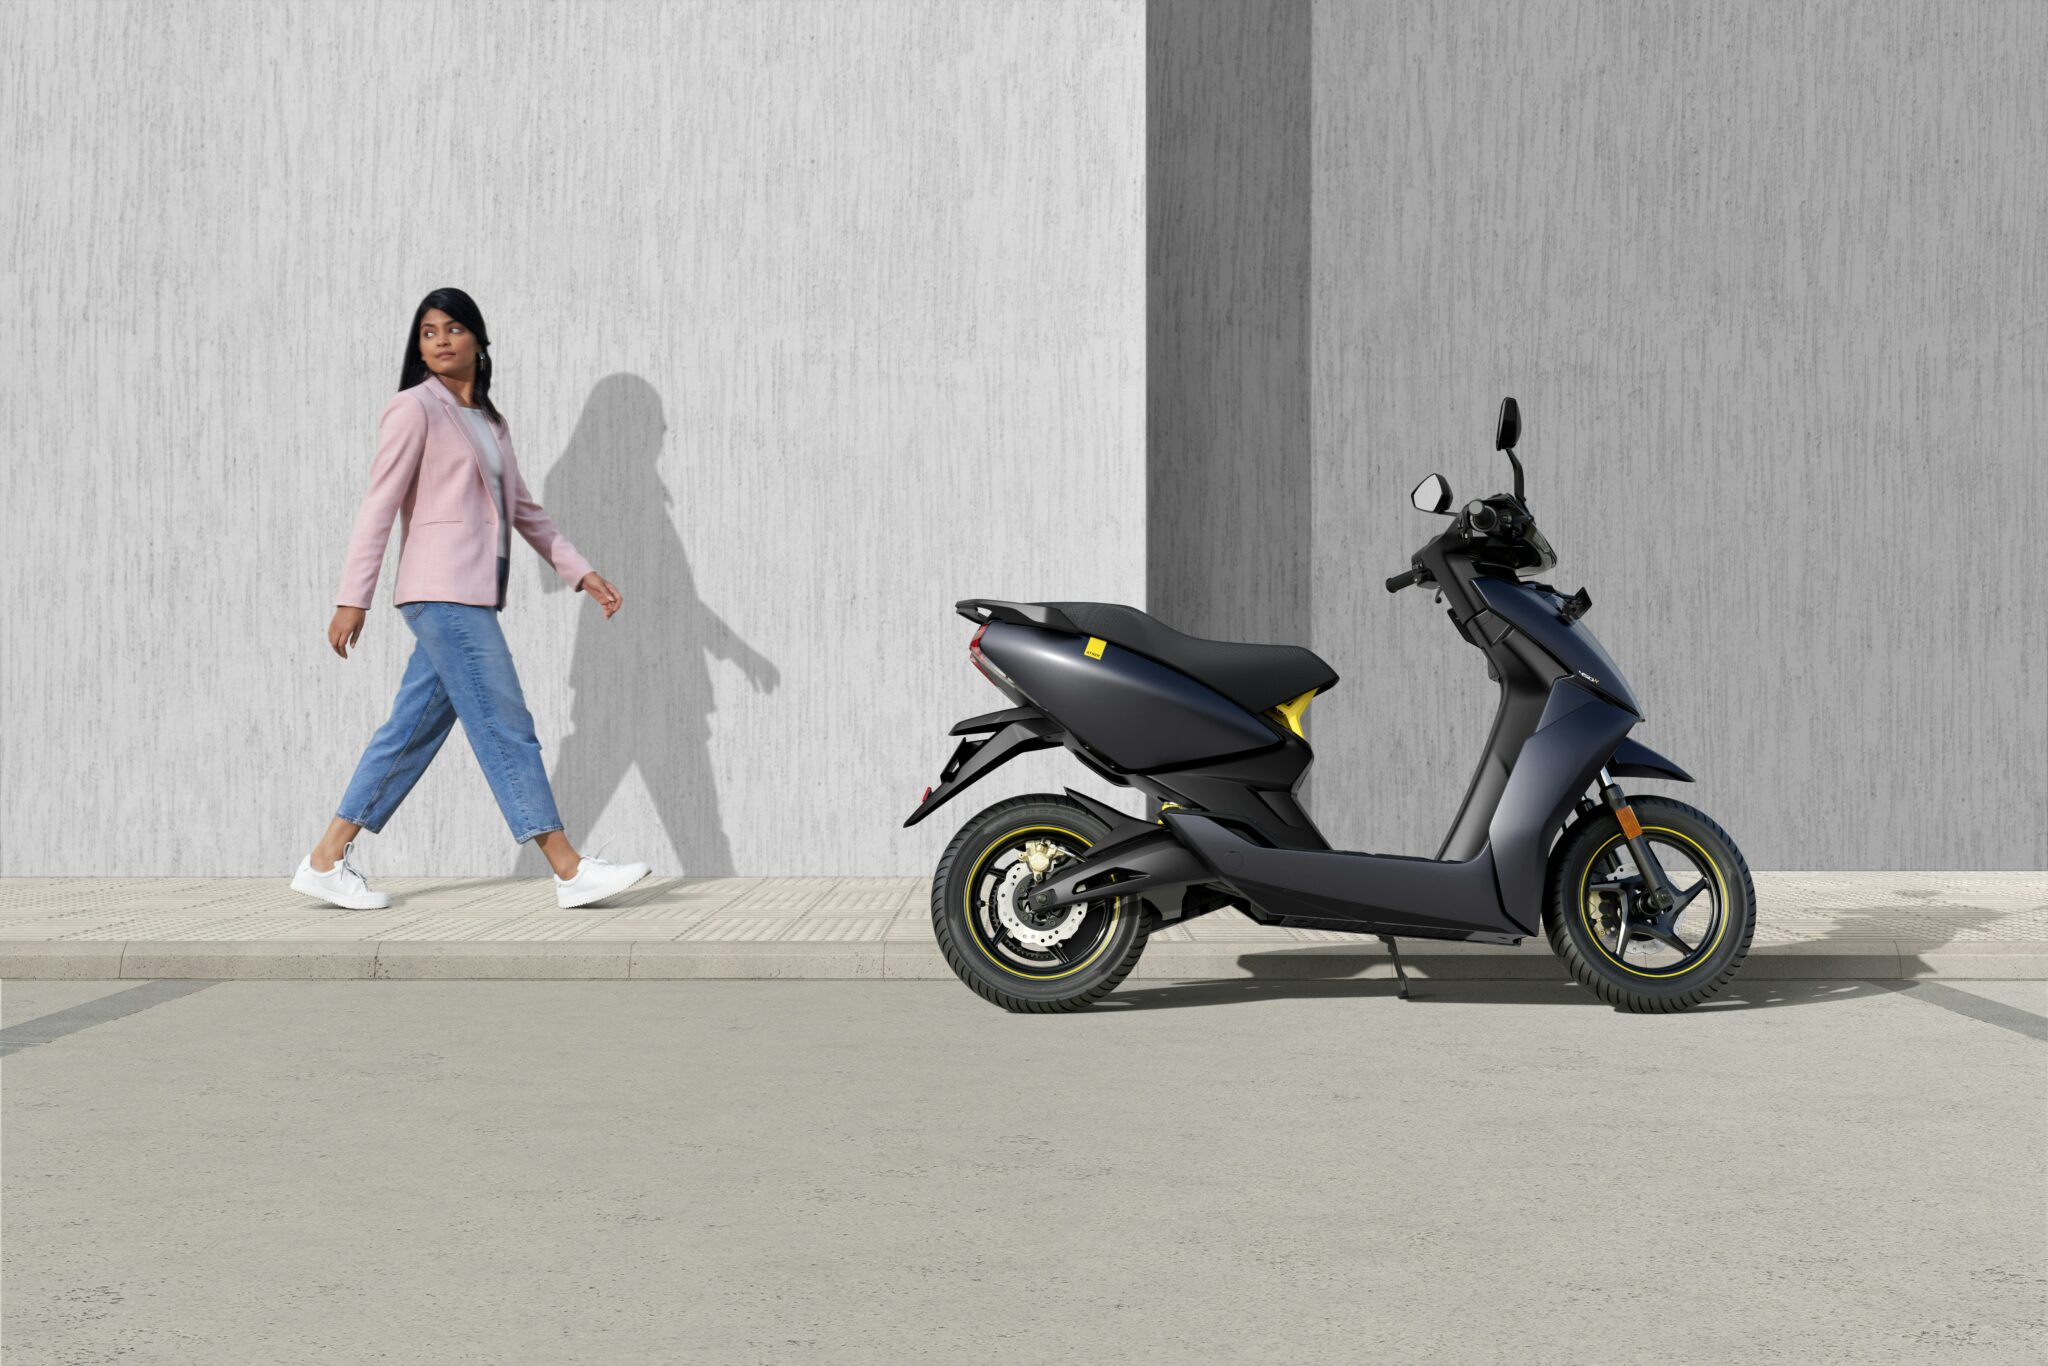 découvrez une gamme de motos électriques modernes et écologiques pour une conduite innovante et respectueuse de l'environnement.